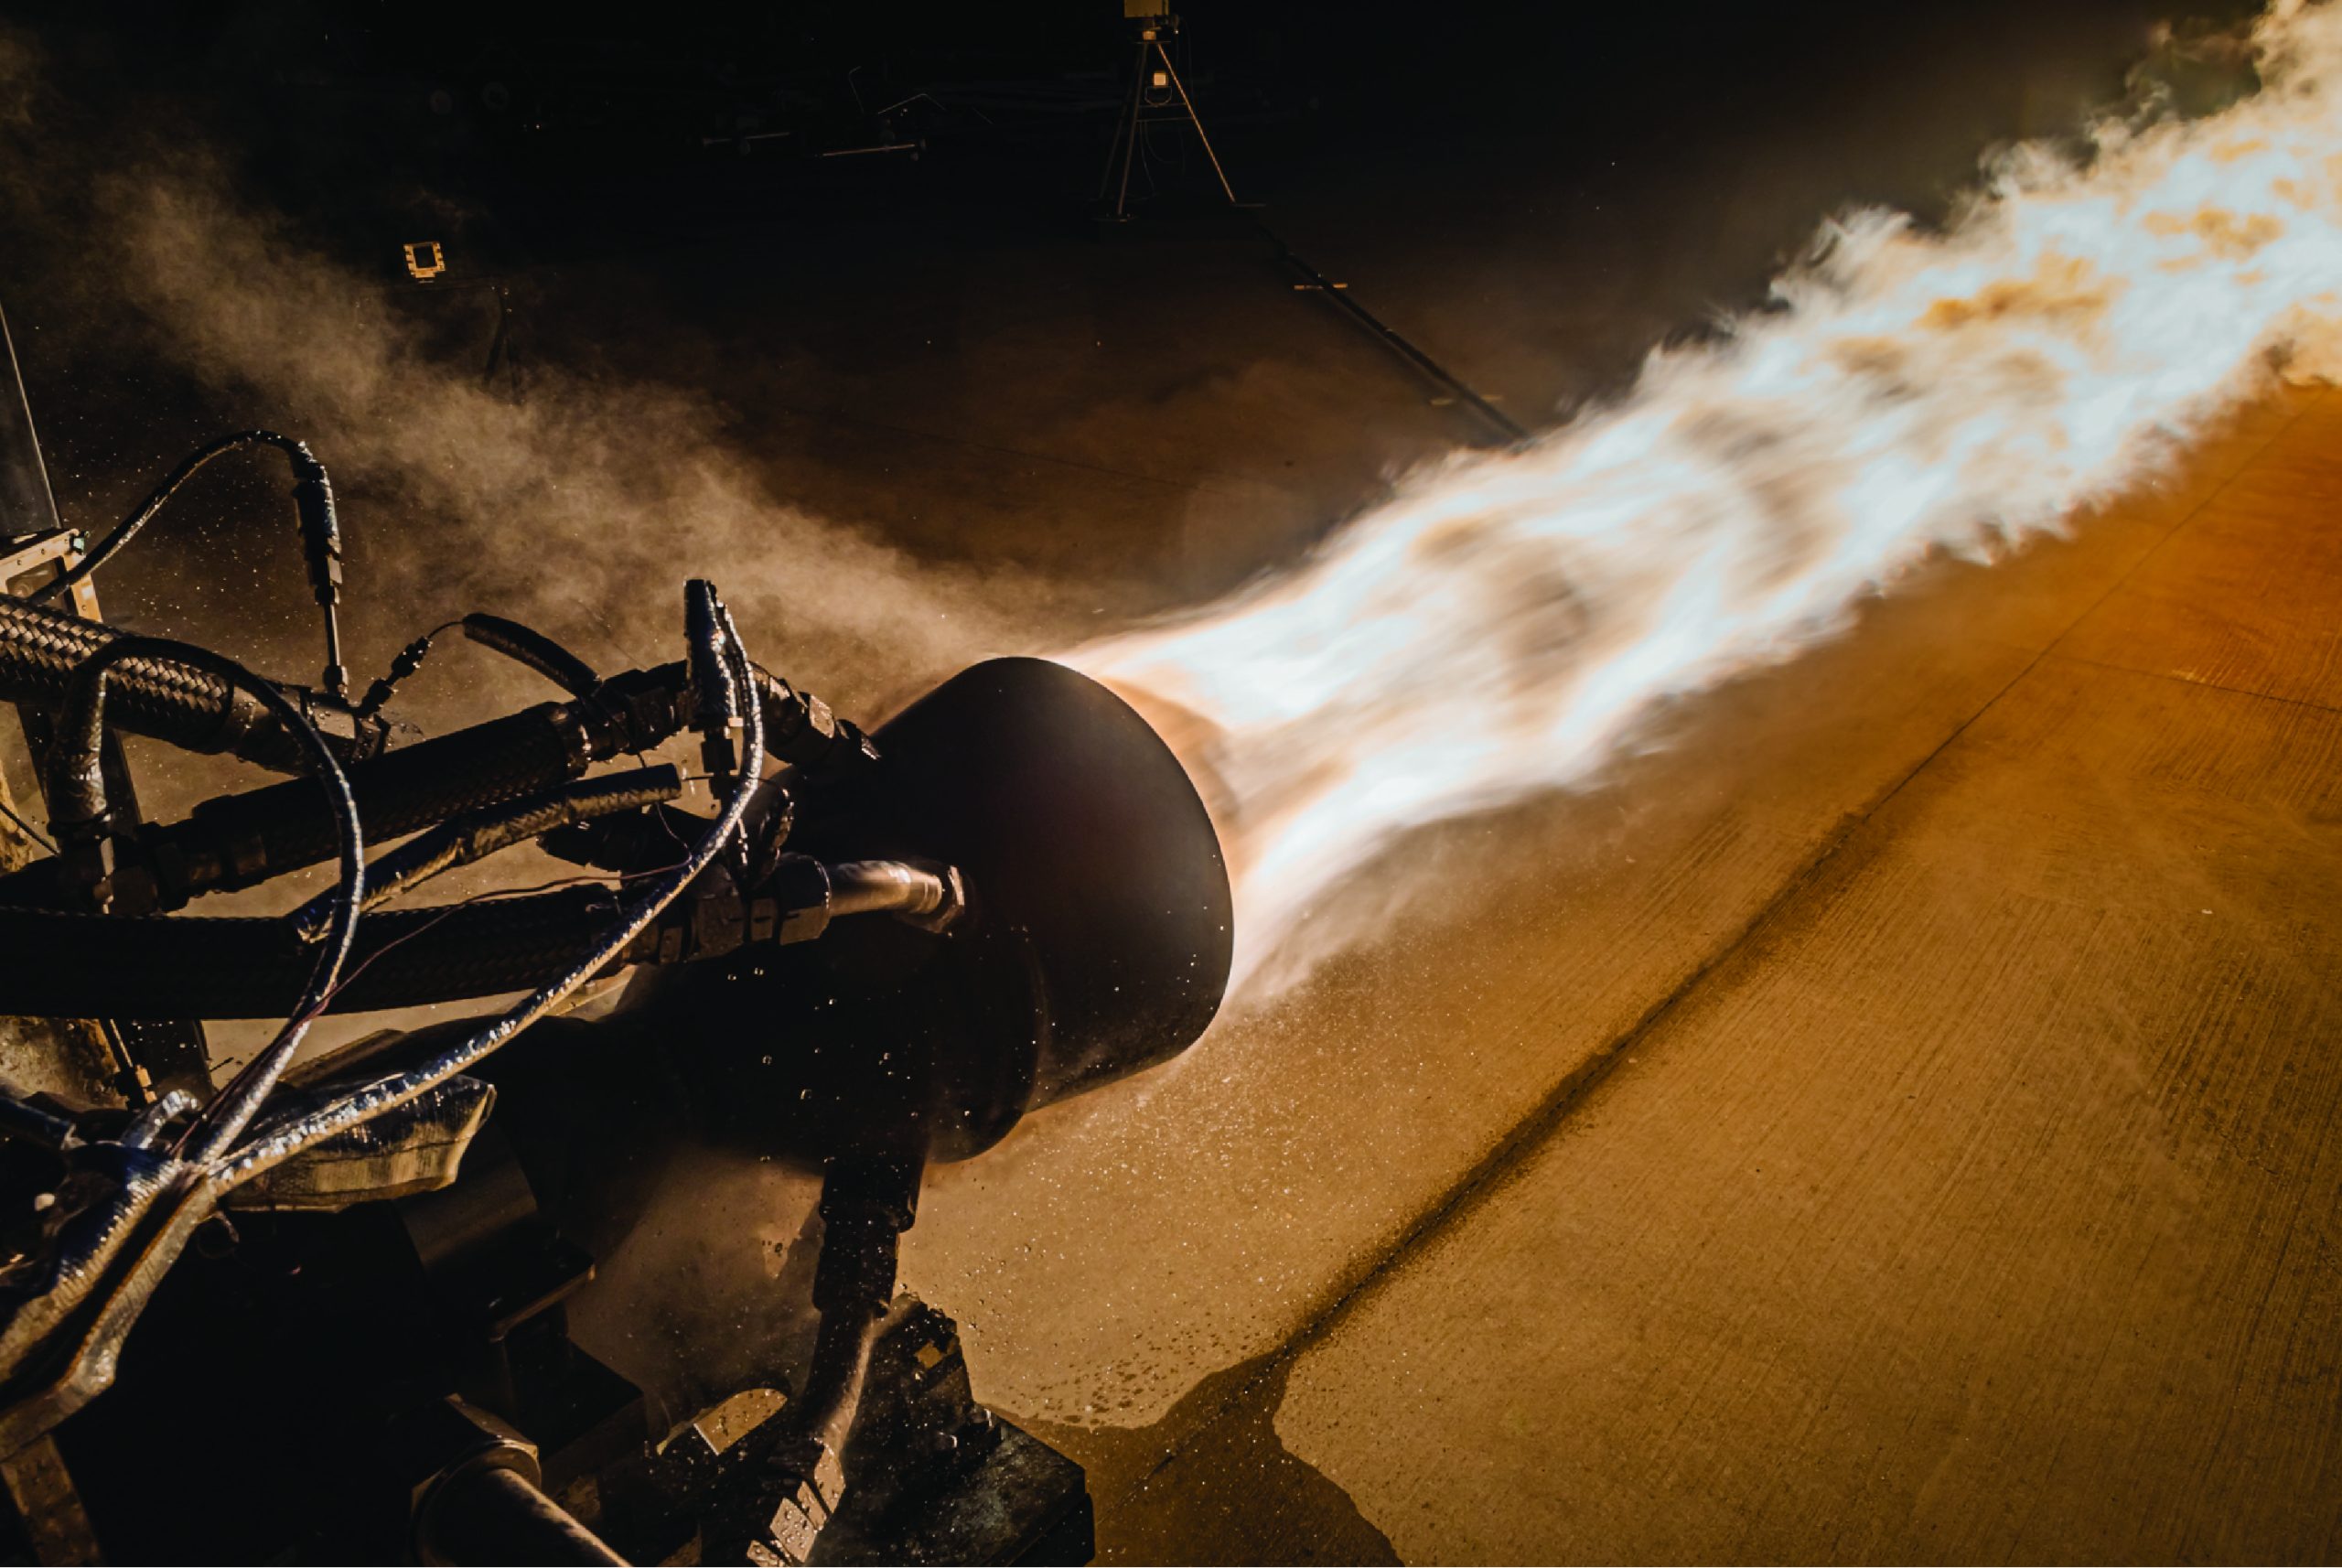 发射装置正在美国宇航局斯坦尼斯航天中心的E测试中心对其3d打印的发动机-2火箭发动机进行热燃烧测试。照片通过Launcher/John Kraus摄影。